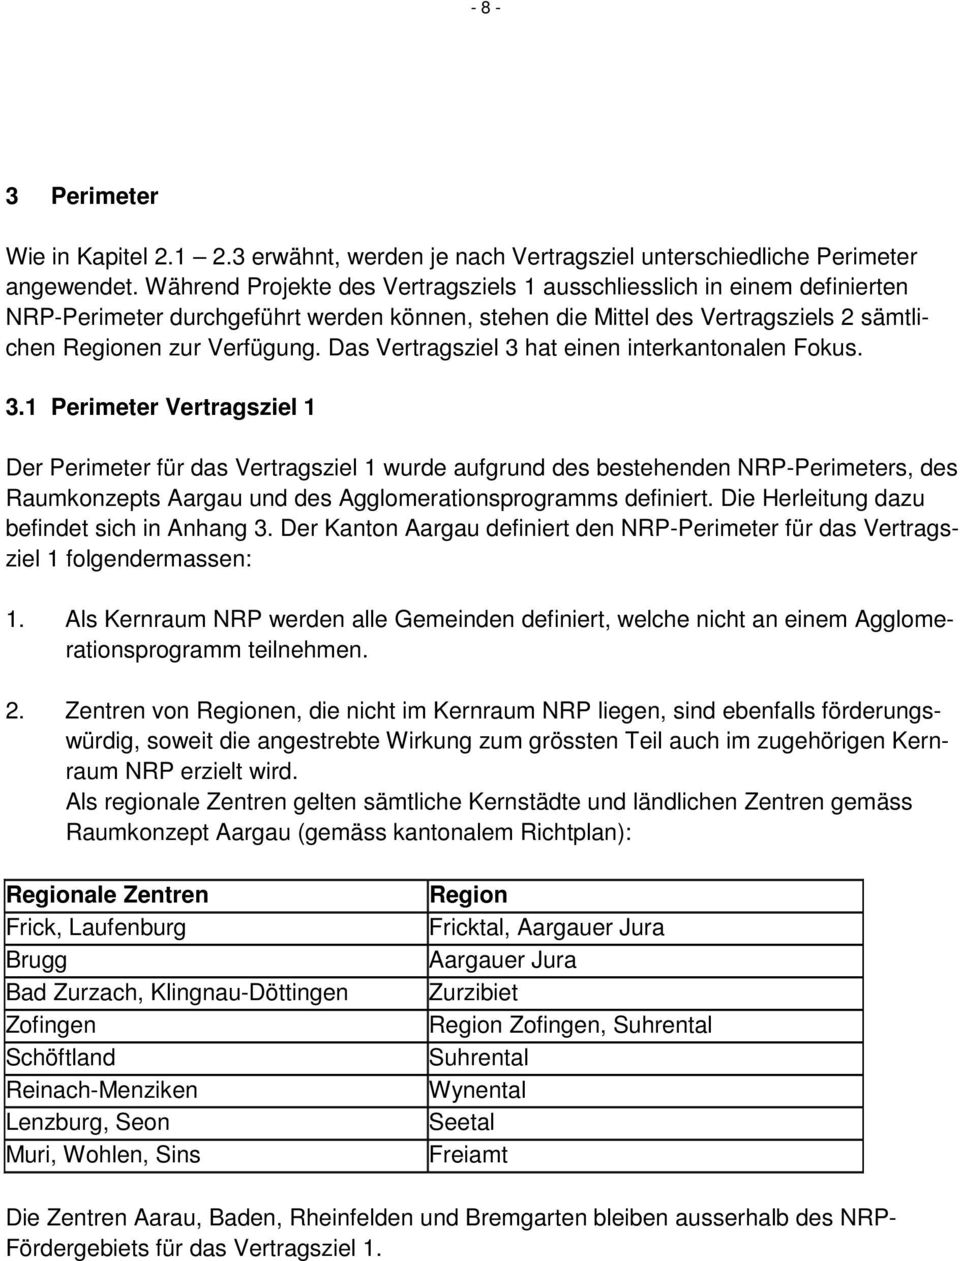 Das Vertragsziel 3 hat einen interkantonalen Fokus. 3.1 Perimeter Vertragsziel 1 Der Perimeter für das Vertragsziel 1 wurde aufgrund des bestehenden NRP-Perimeters, des Raumkonzepts Aargau und des Agglomerationsprogramms definiert.